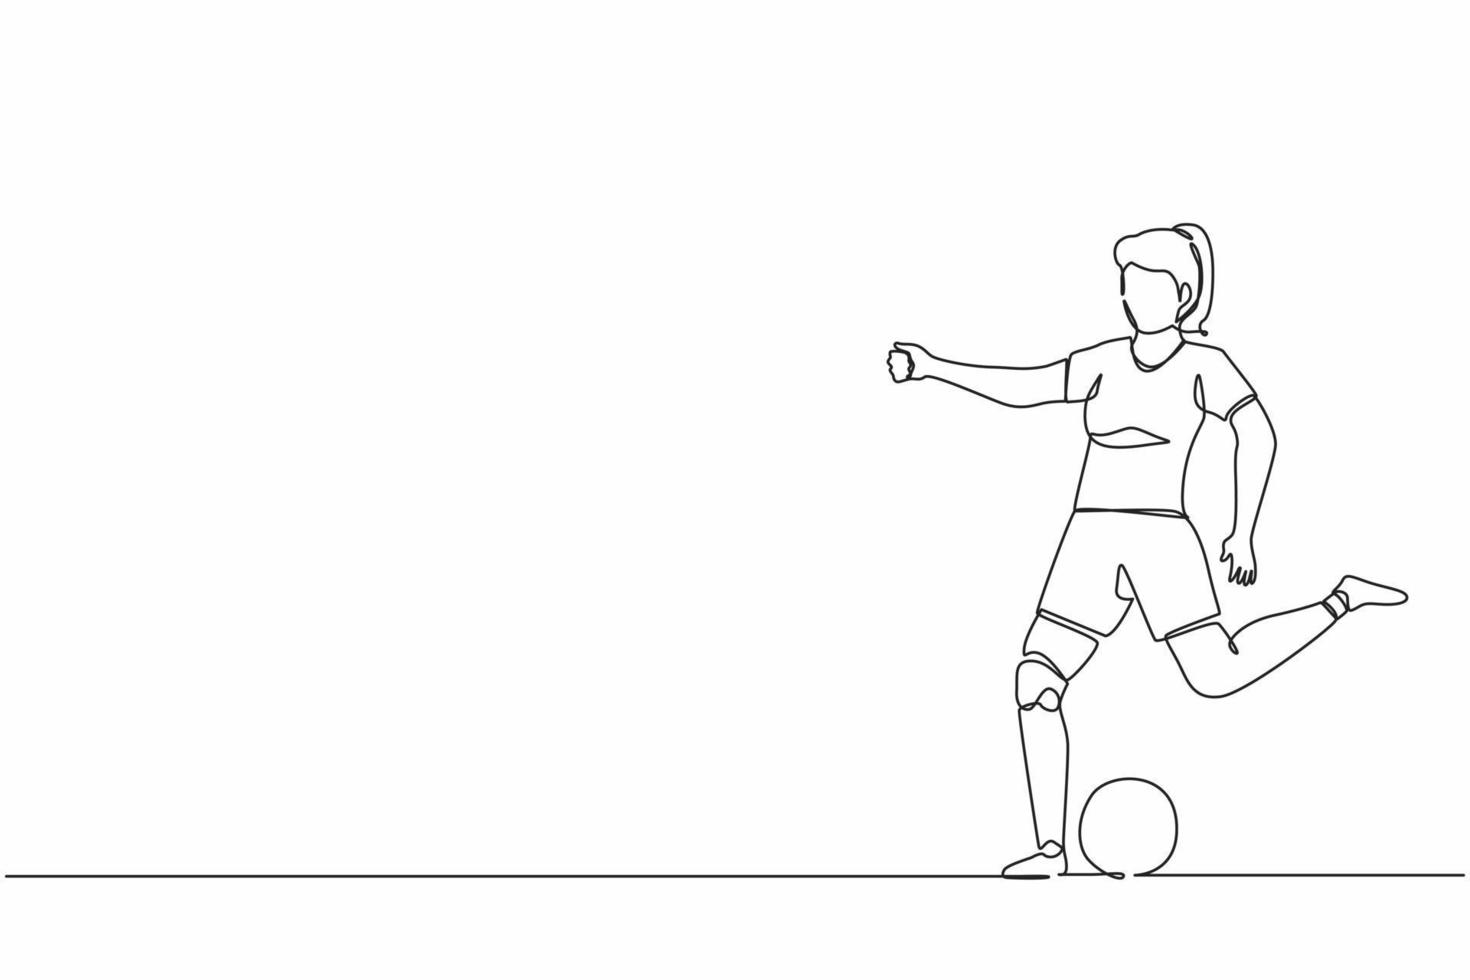 durchgehende einzeilige zeichnung behinderte sportlerin, die fußball spielt. Behindertenfußballer mit Beinprothese. Spiel, Wettkampf. sportliches Training. einzeiliges zeichnen design vektorgrafik vektor